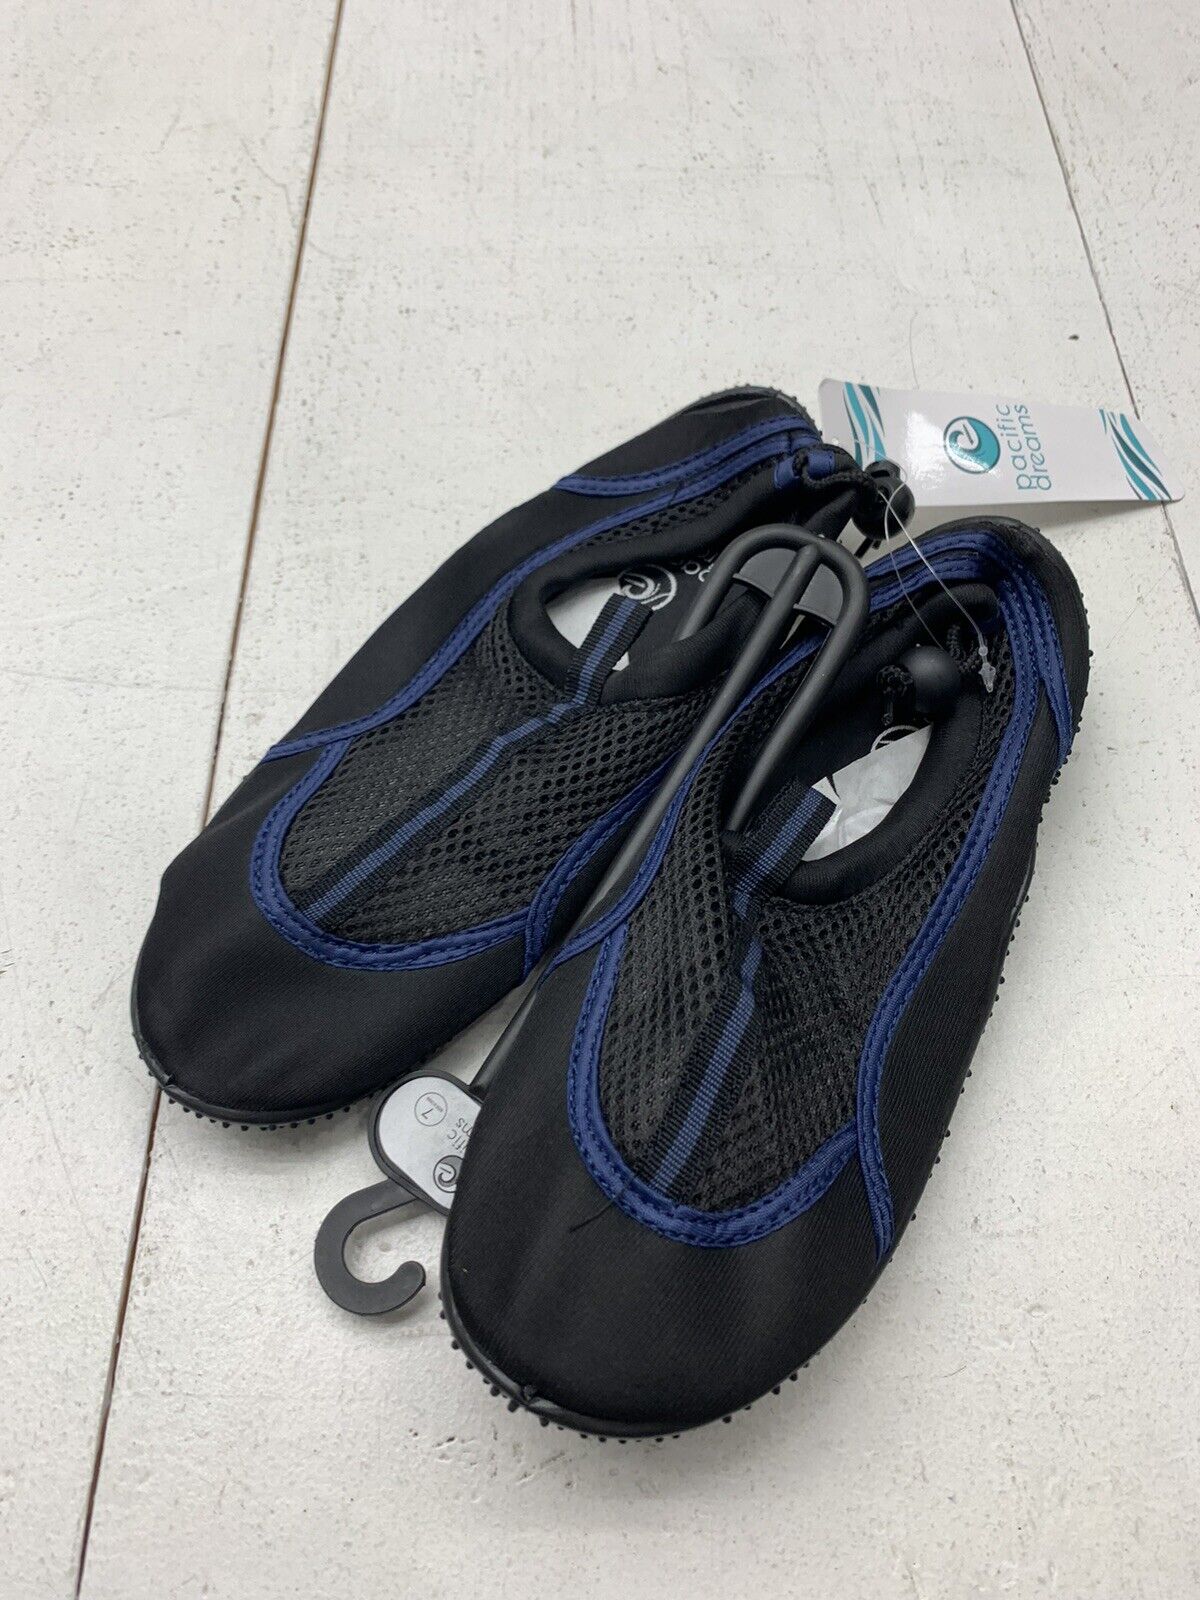 Mens Crivit water shoes  Shoes, Blue black, Shoes mens